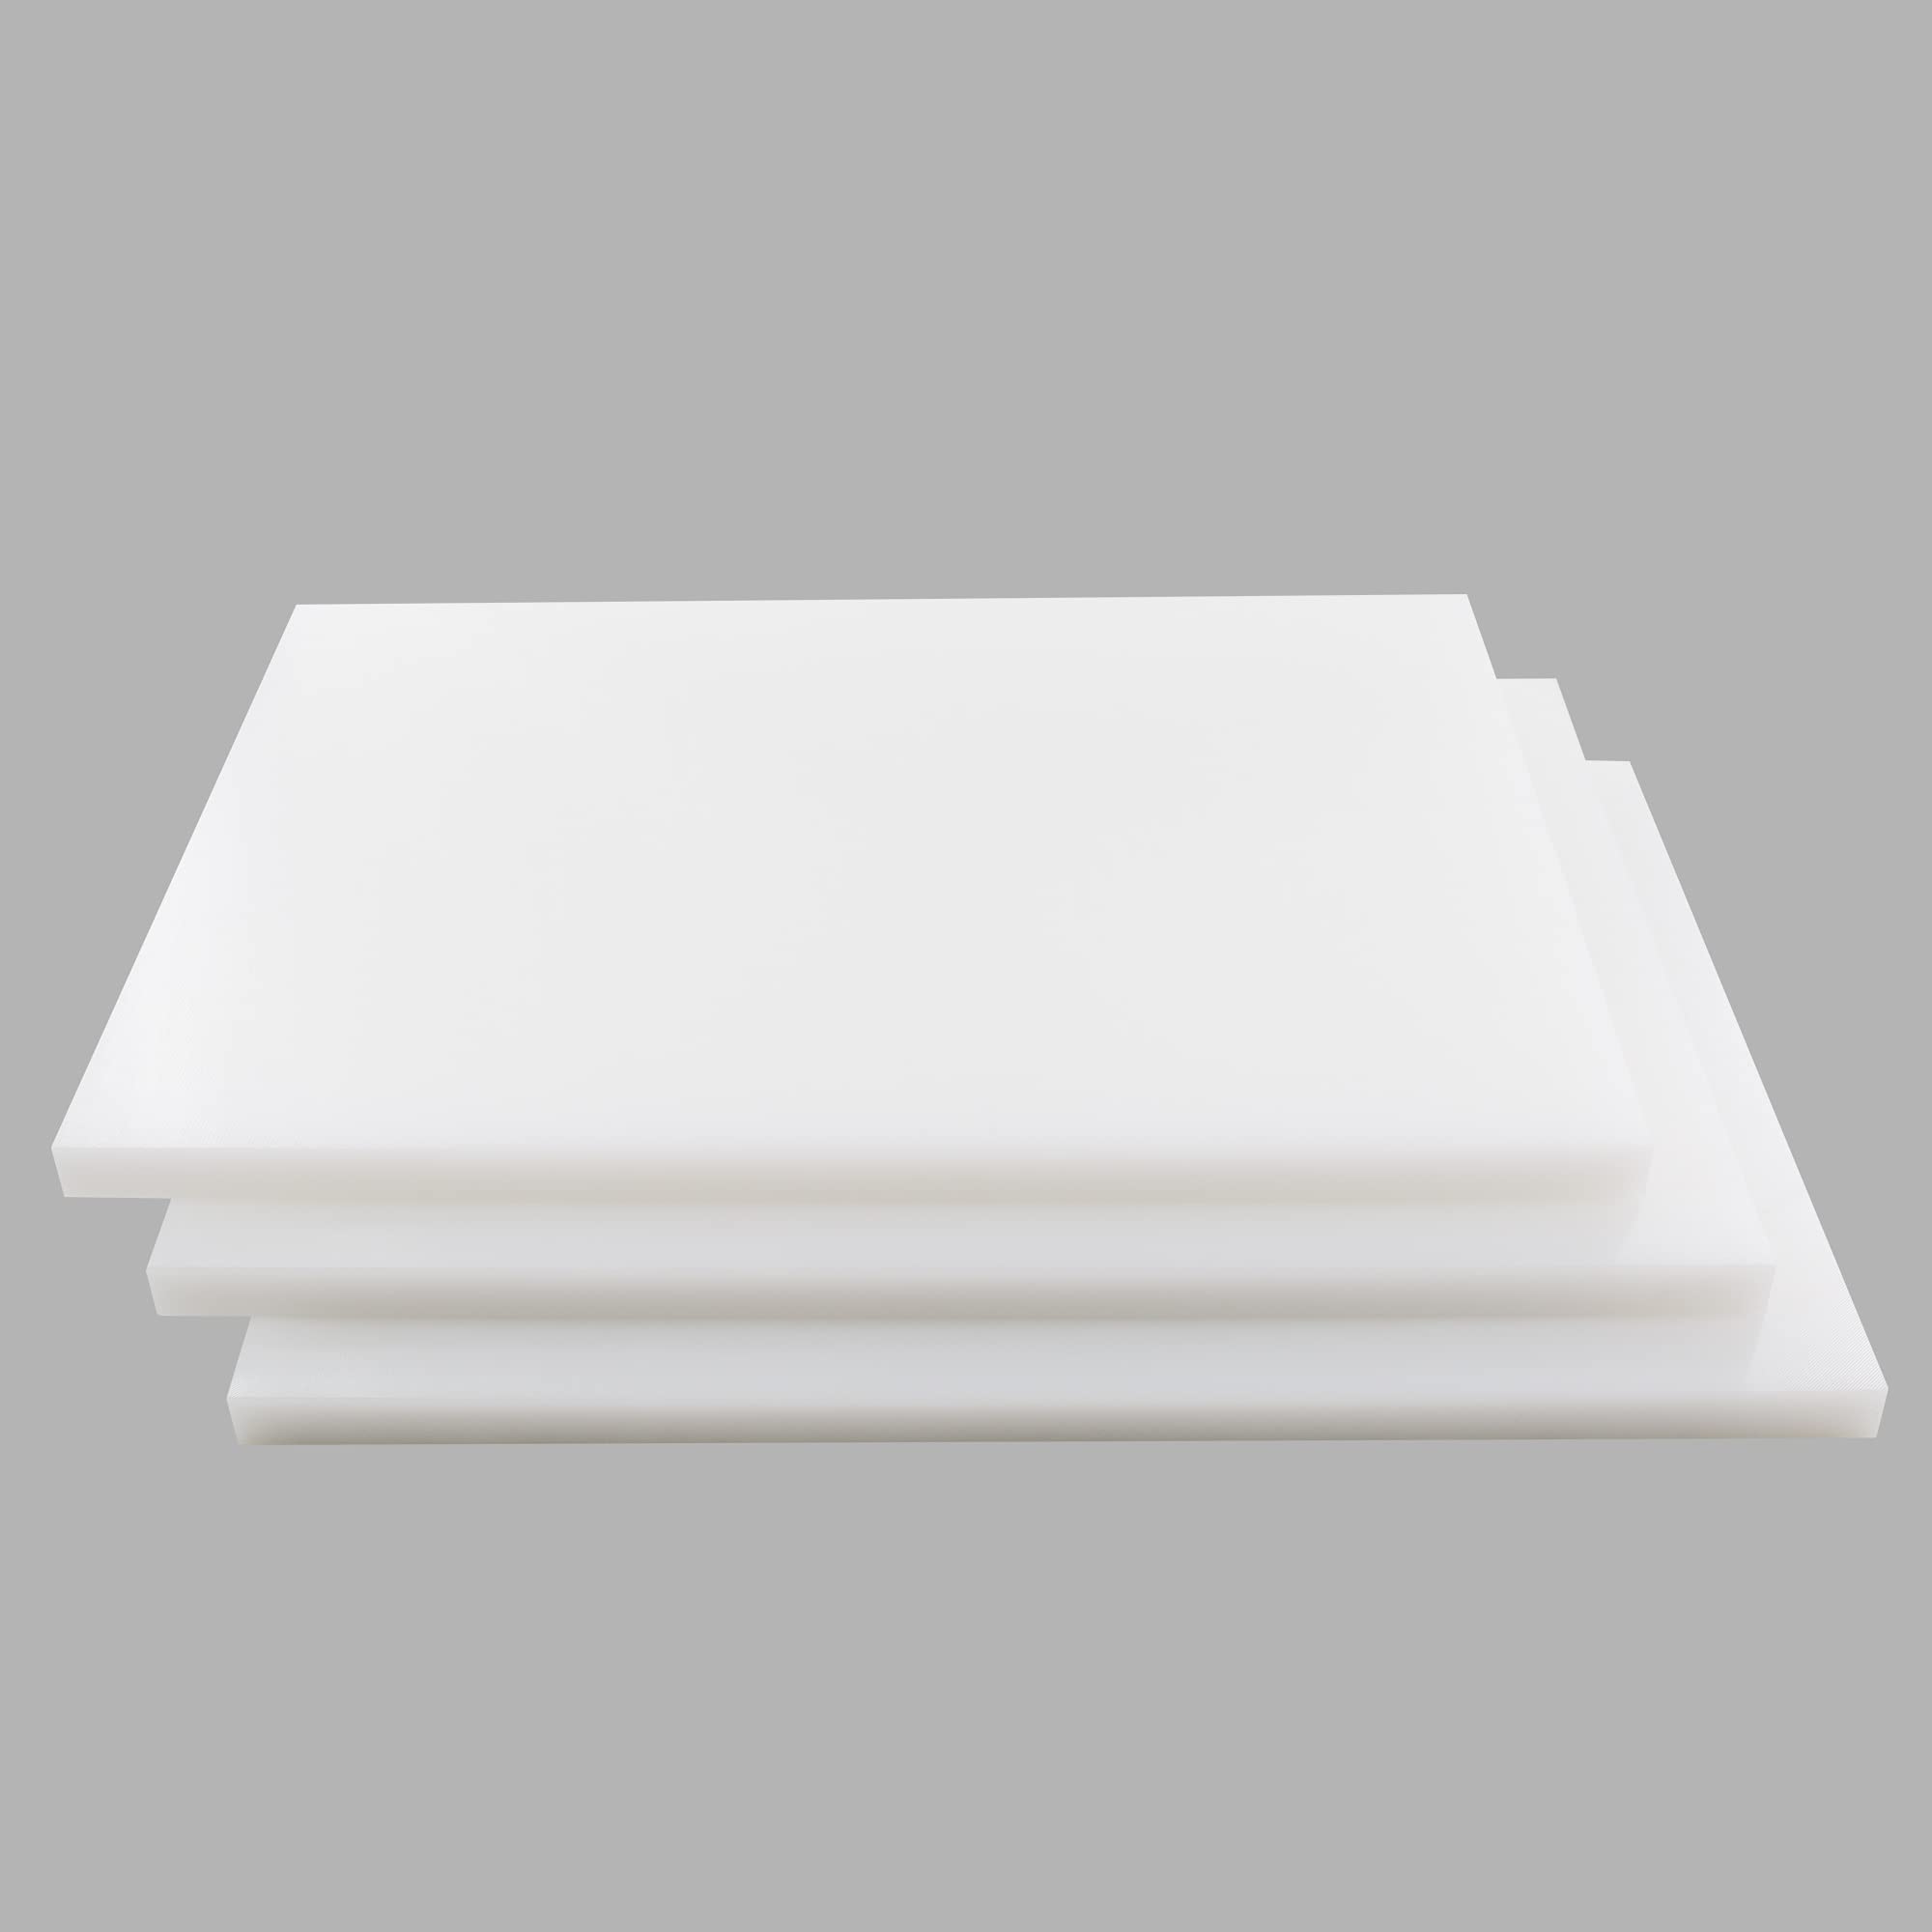 18 x 24 White Cutting Board